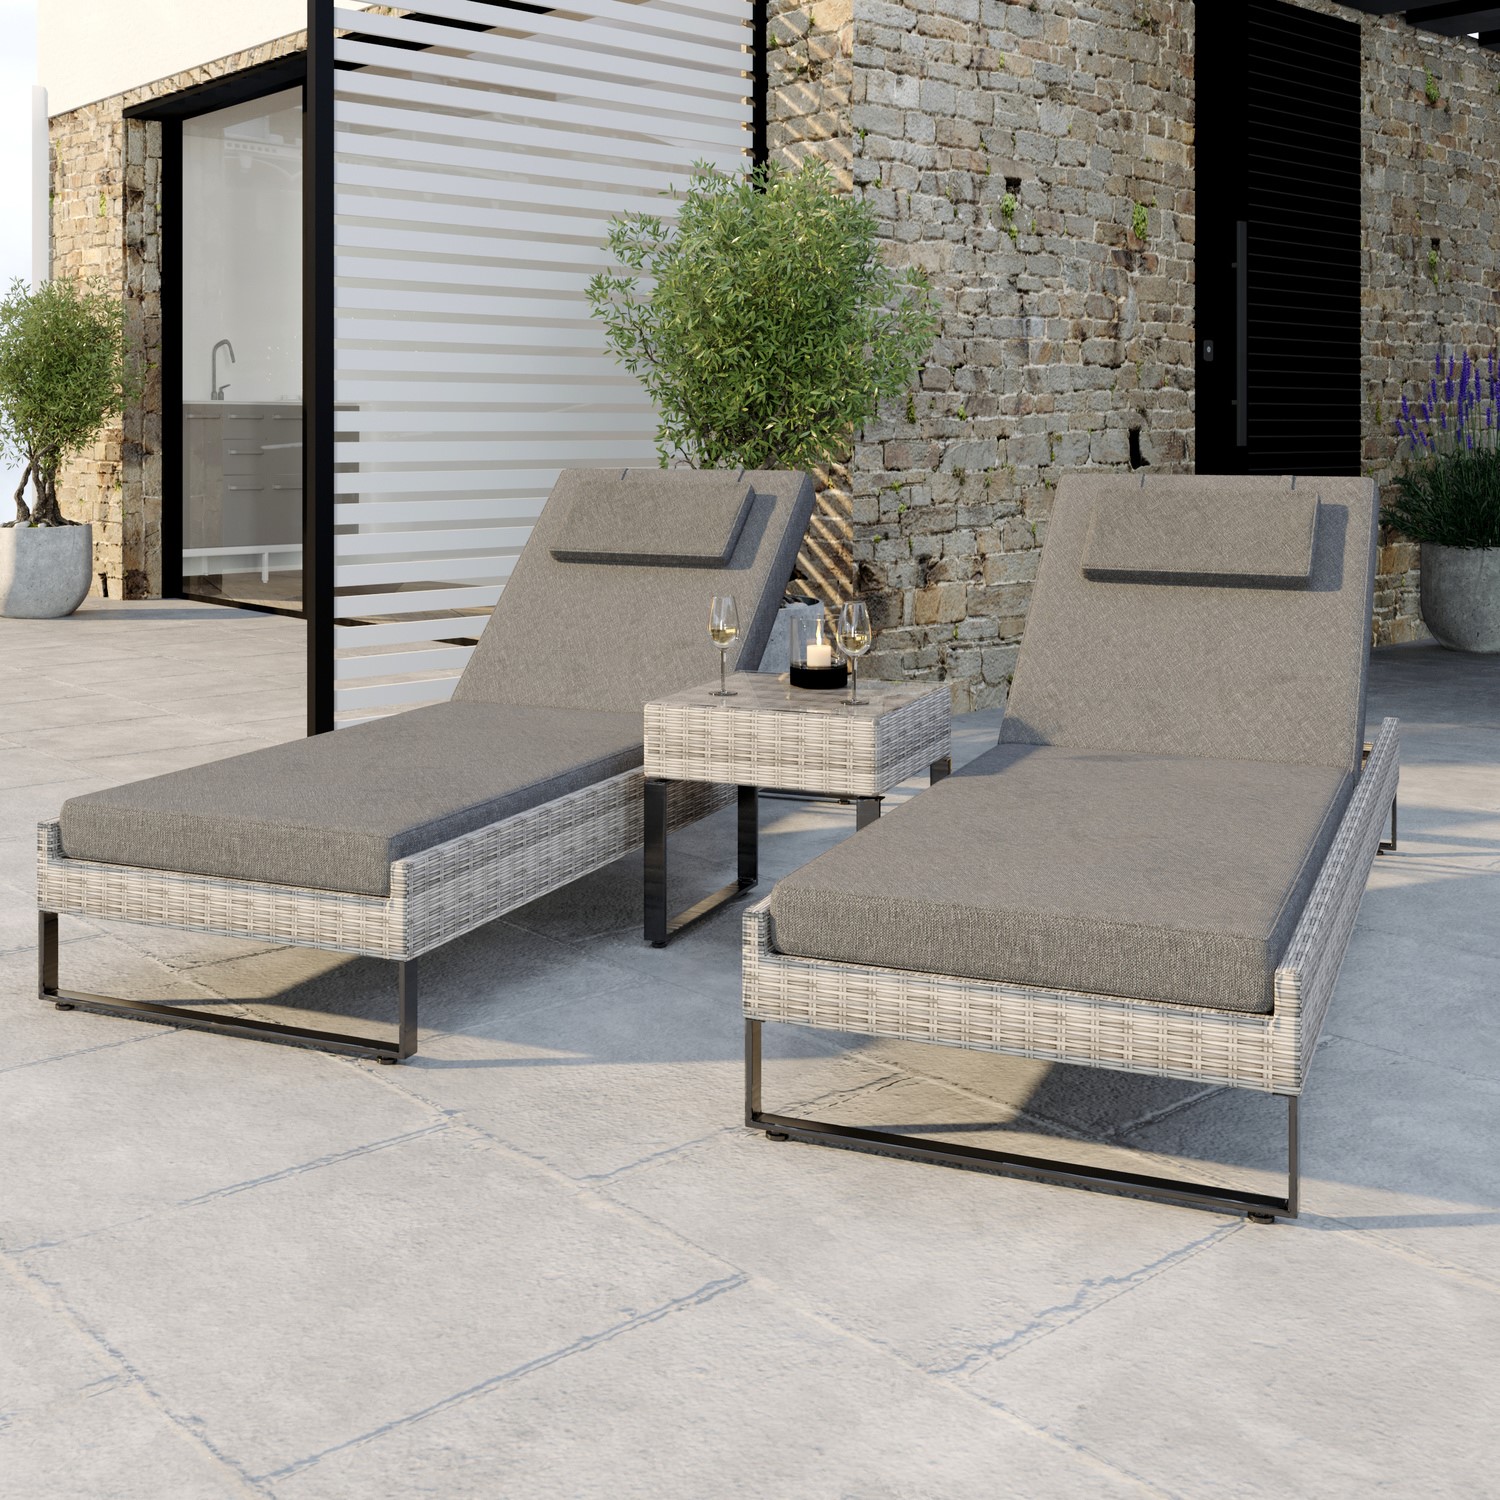 Read more about Pair of grey rattan reclining garden sun lounger set como